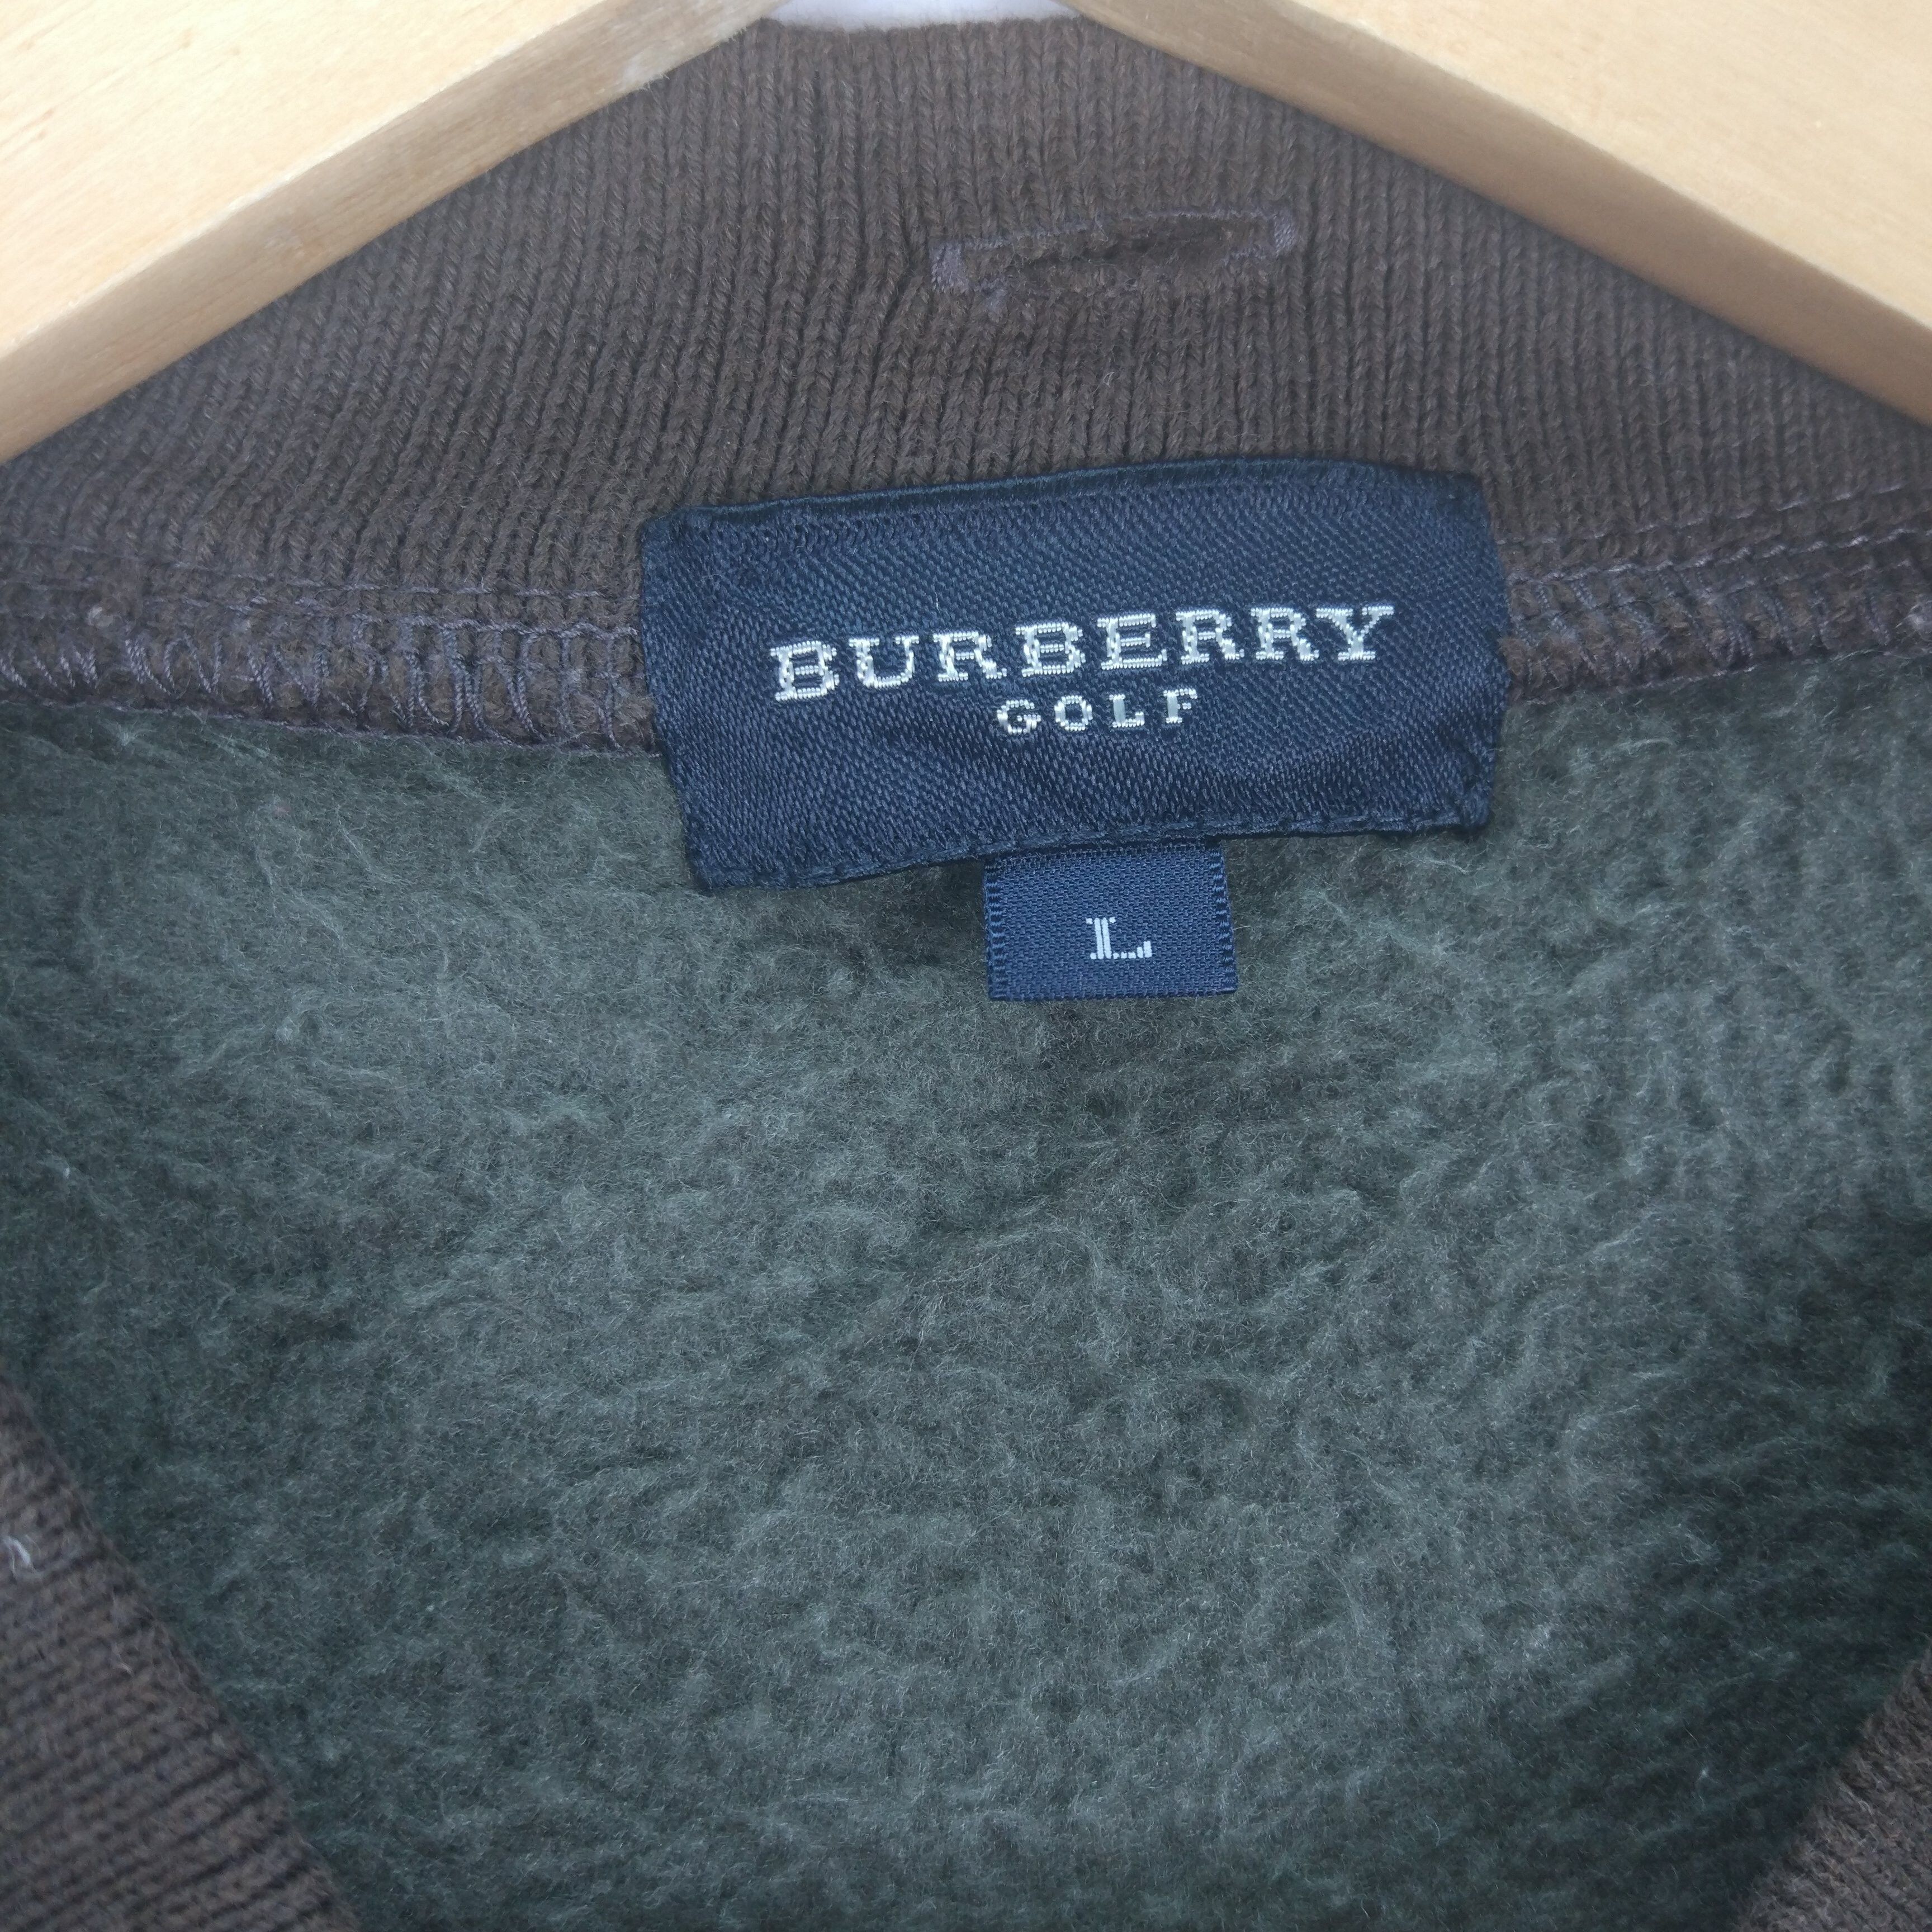 Burberry Golf Zipper Jumper Sweatshirt - 5